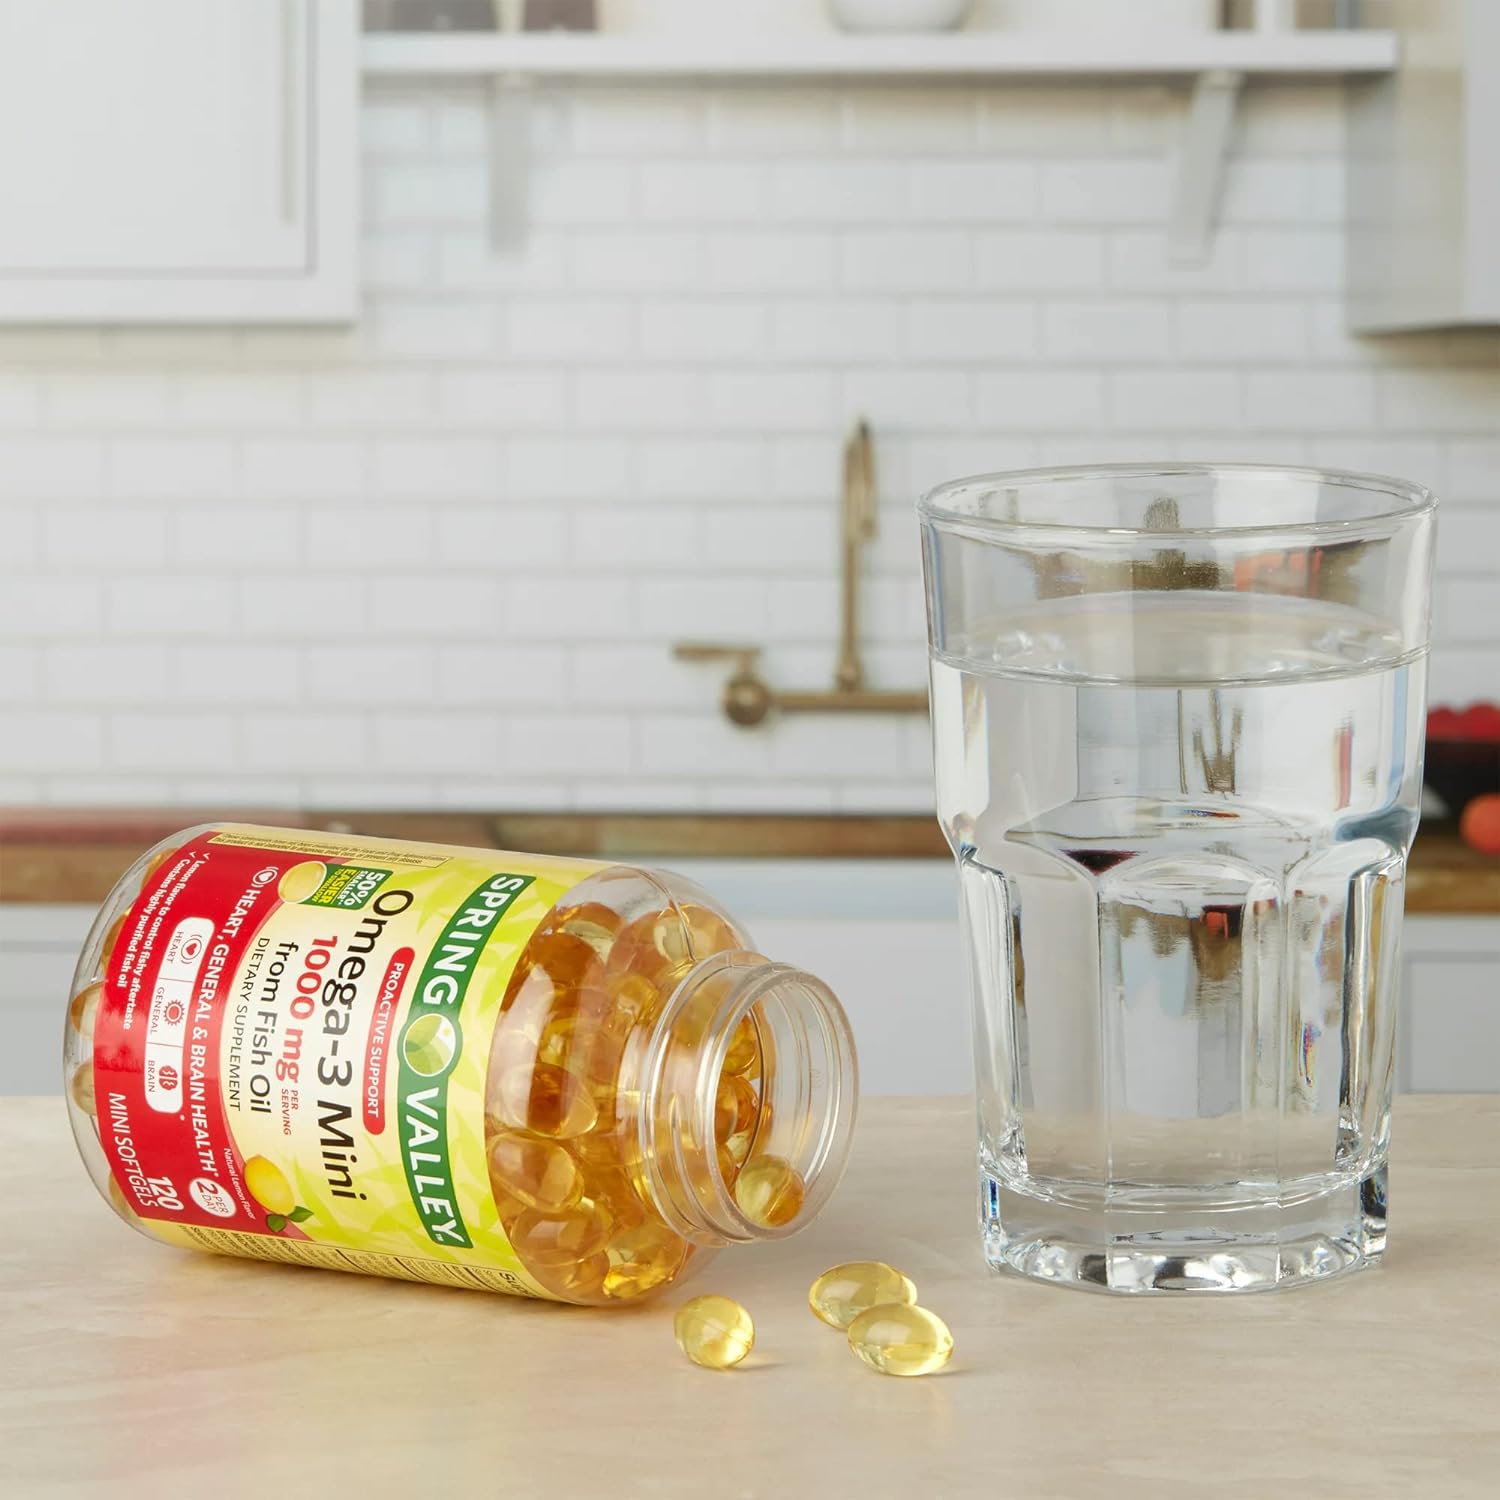 Spring Valley Omega-3 Fish Oil 1000mg - Tăng Cường Sức Khỏe Mắt, Cải Thiện Hiệu Suất Tập Luyện, Giảm Mệt Mỏi Đau Nhức Sau Tập